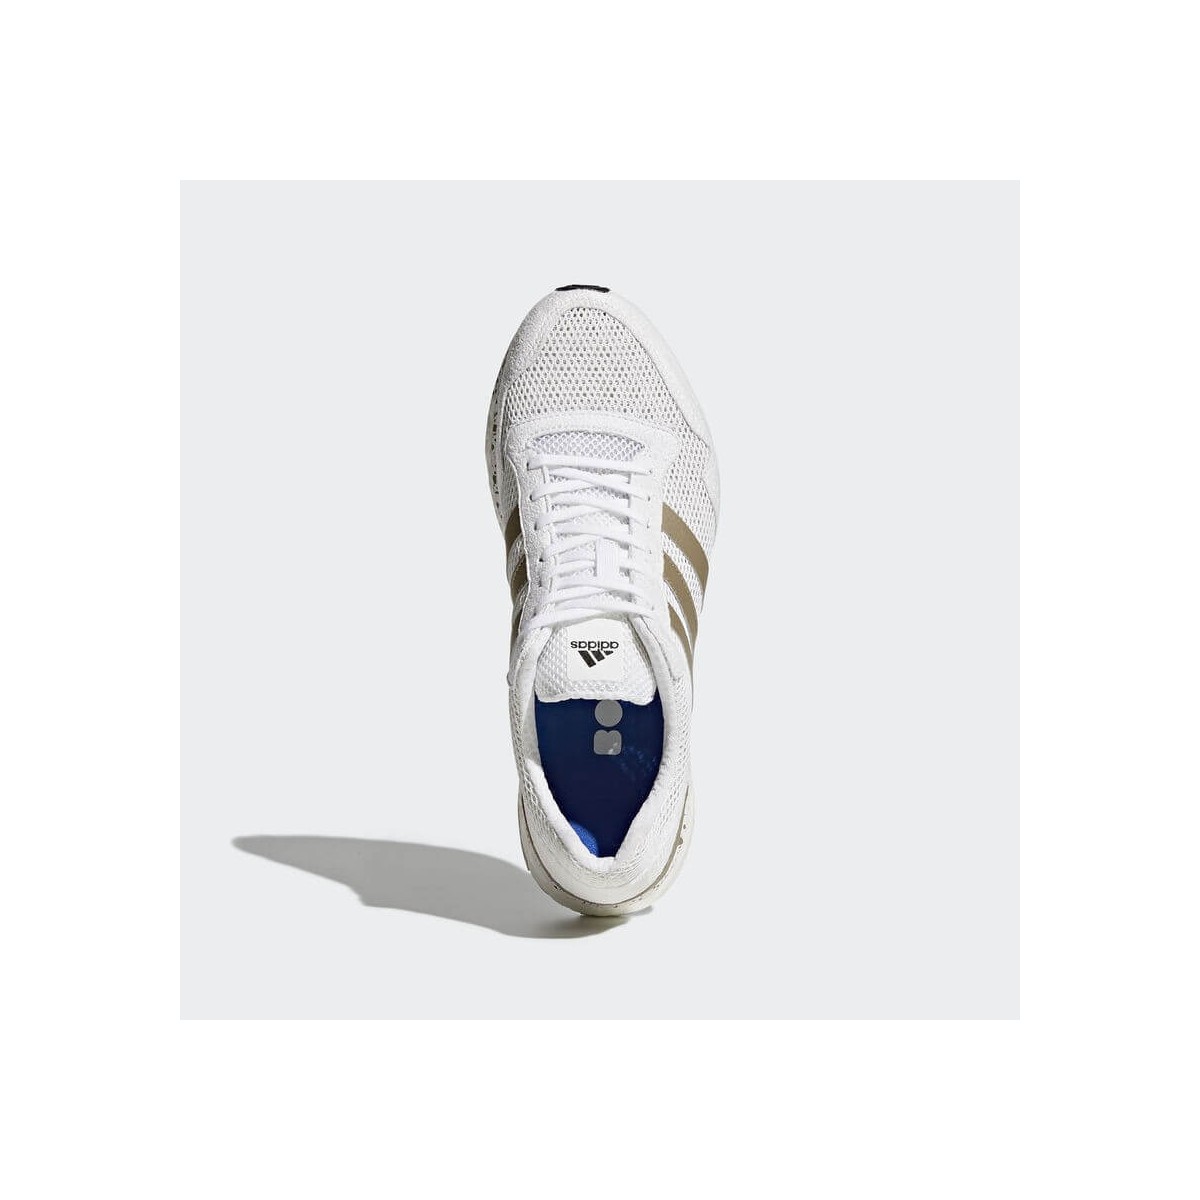 Adidas Adizero 3 Boost metálico Hombre PV18 - 365Rider